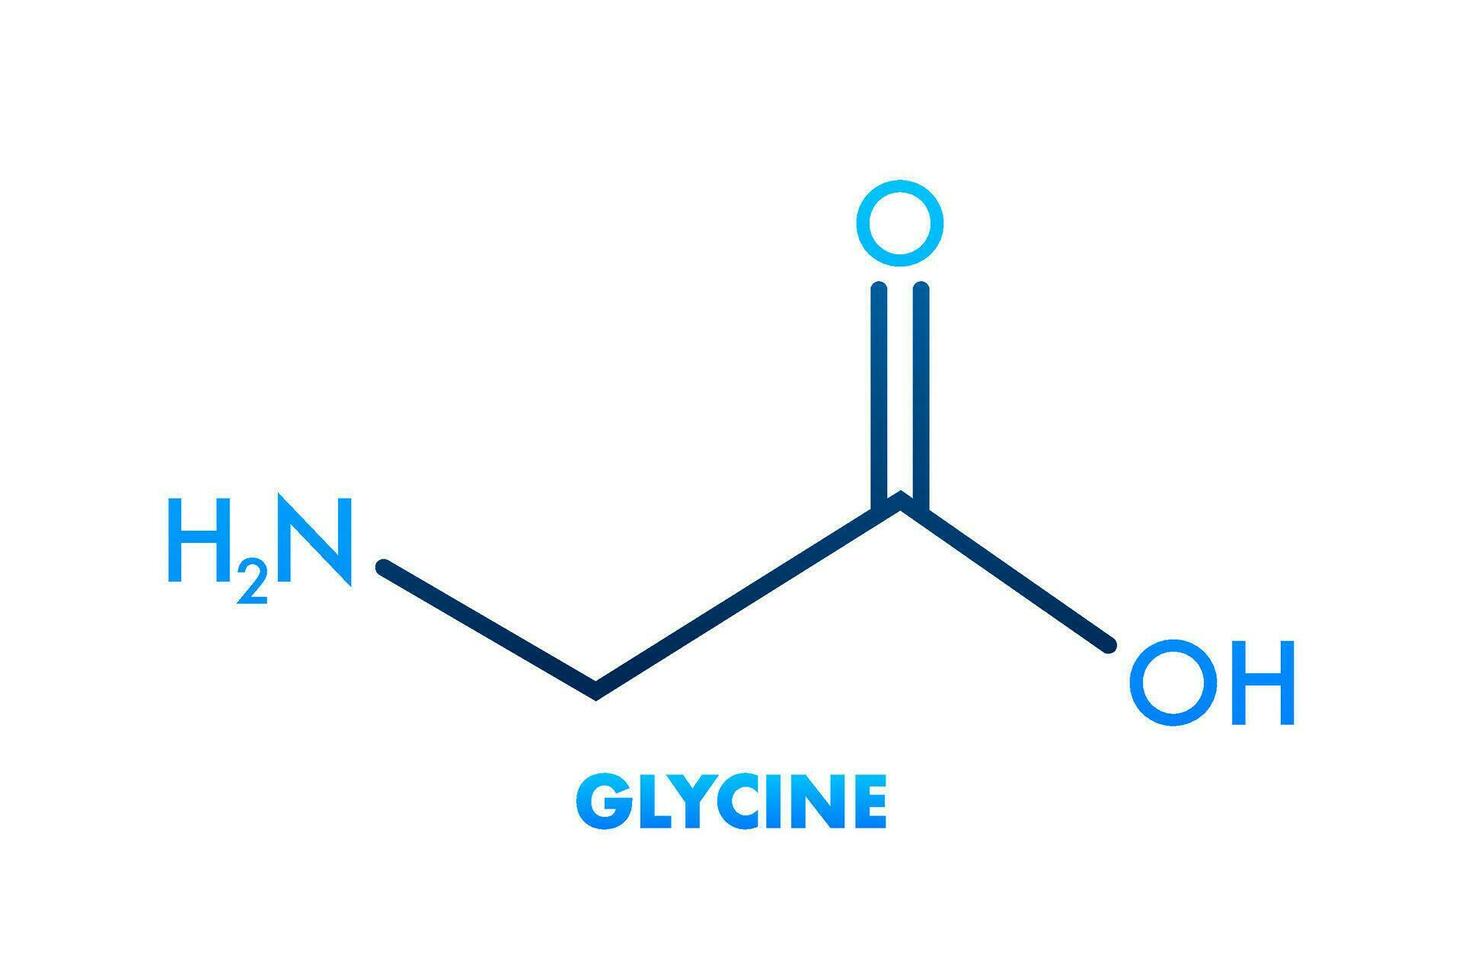 glycine formule. glycine formule, génial conception pour tout fins. vecteur